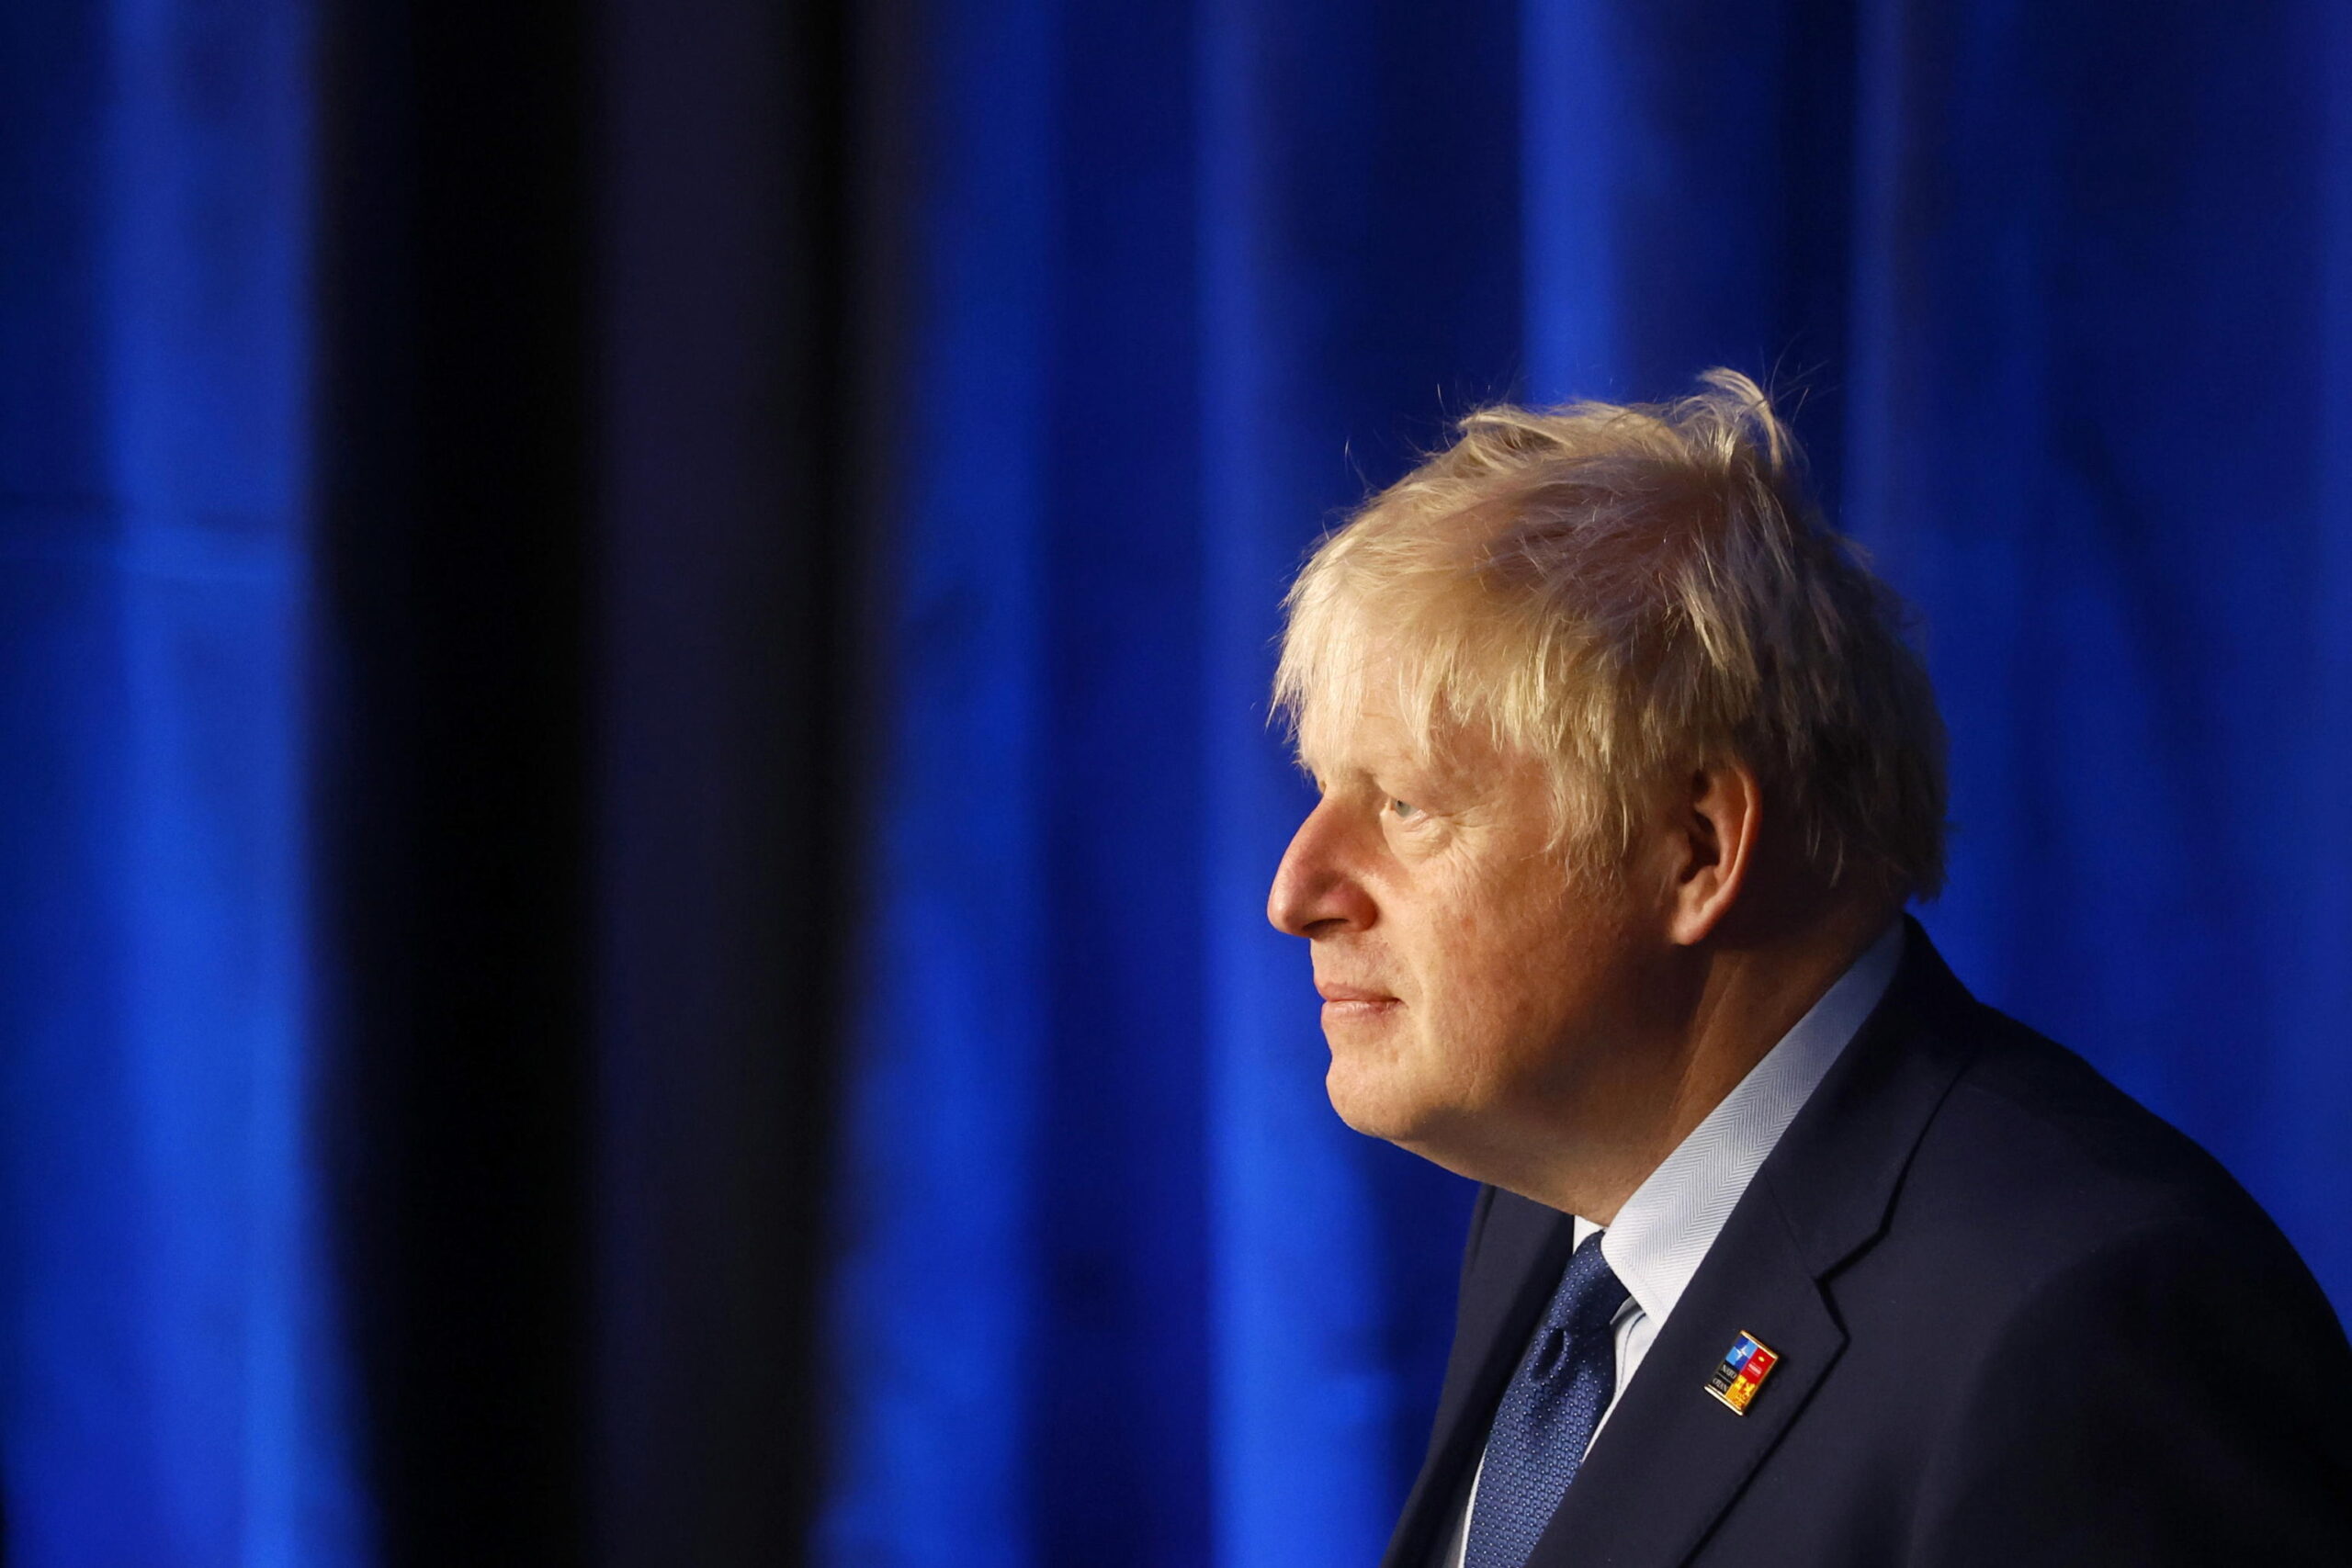 Regno Unito, Johnson sempre più isolato: licenziato il fedelissimo Gove. Continuano le dimissioni nel governo